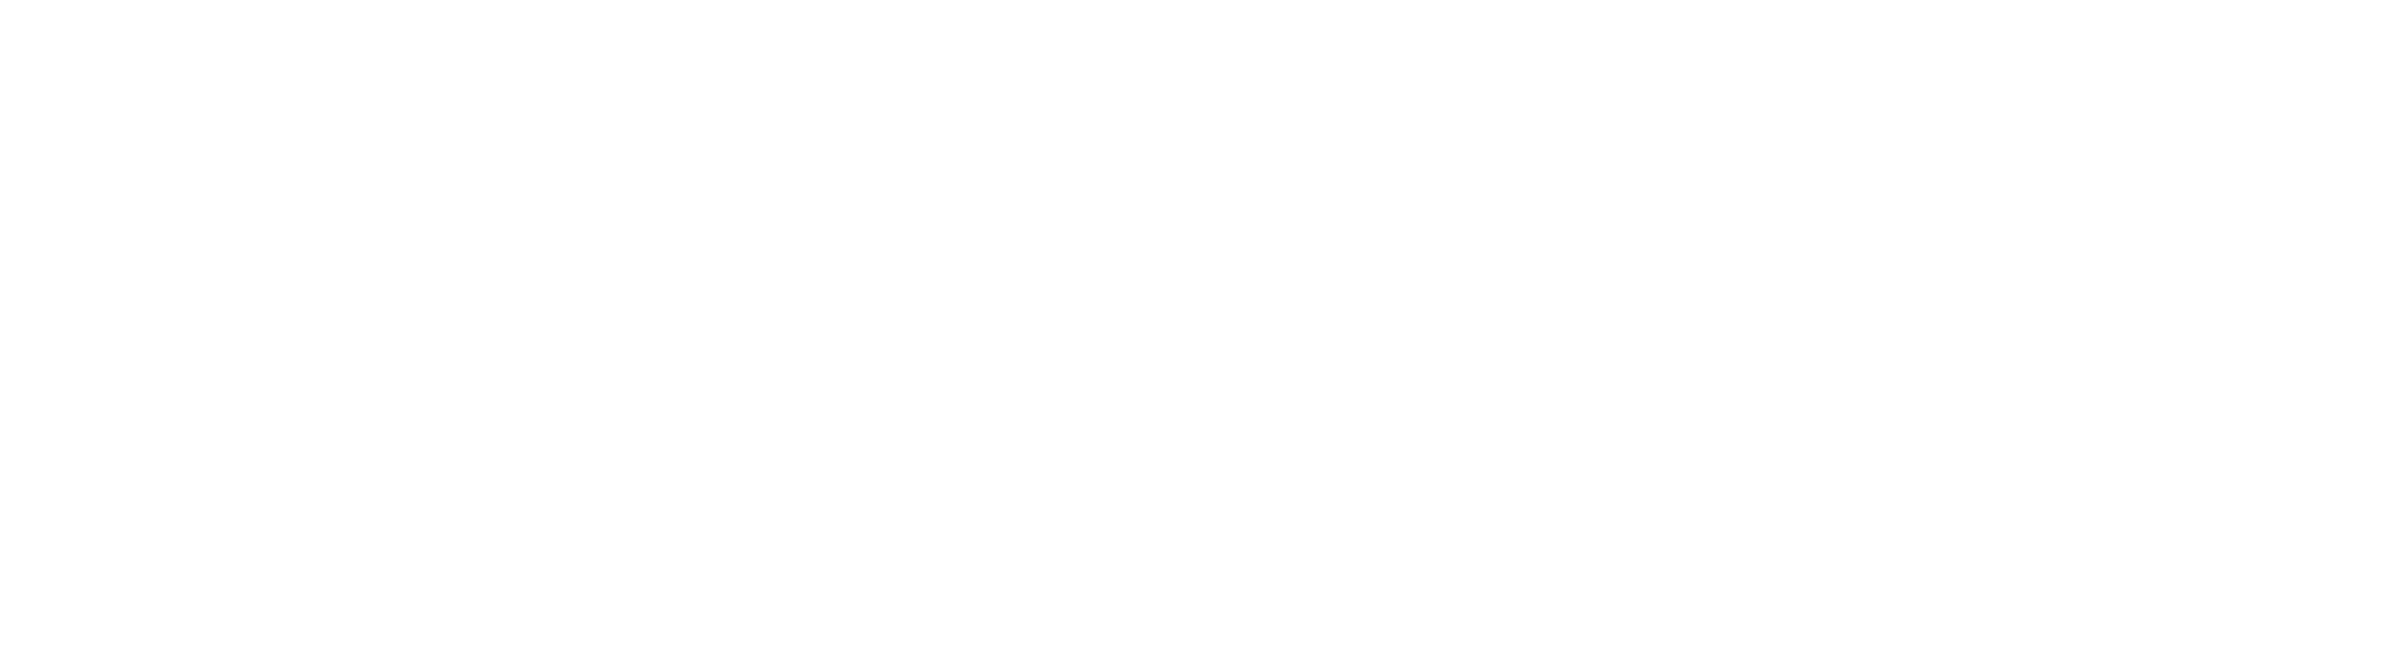 Portuguese Exports